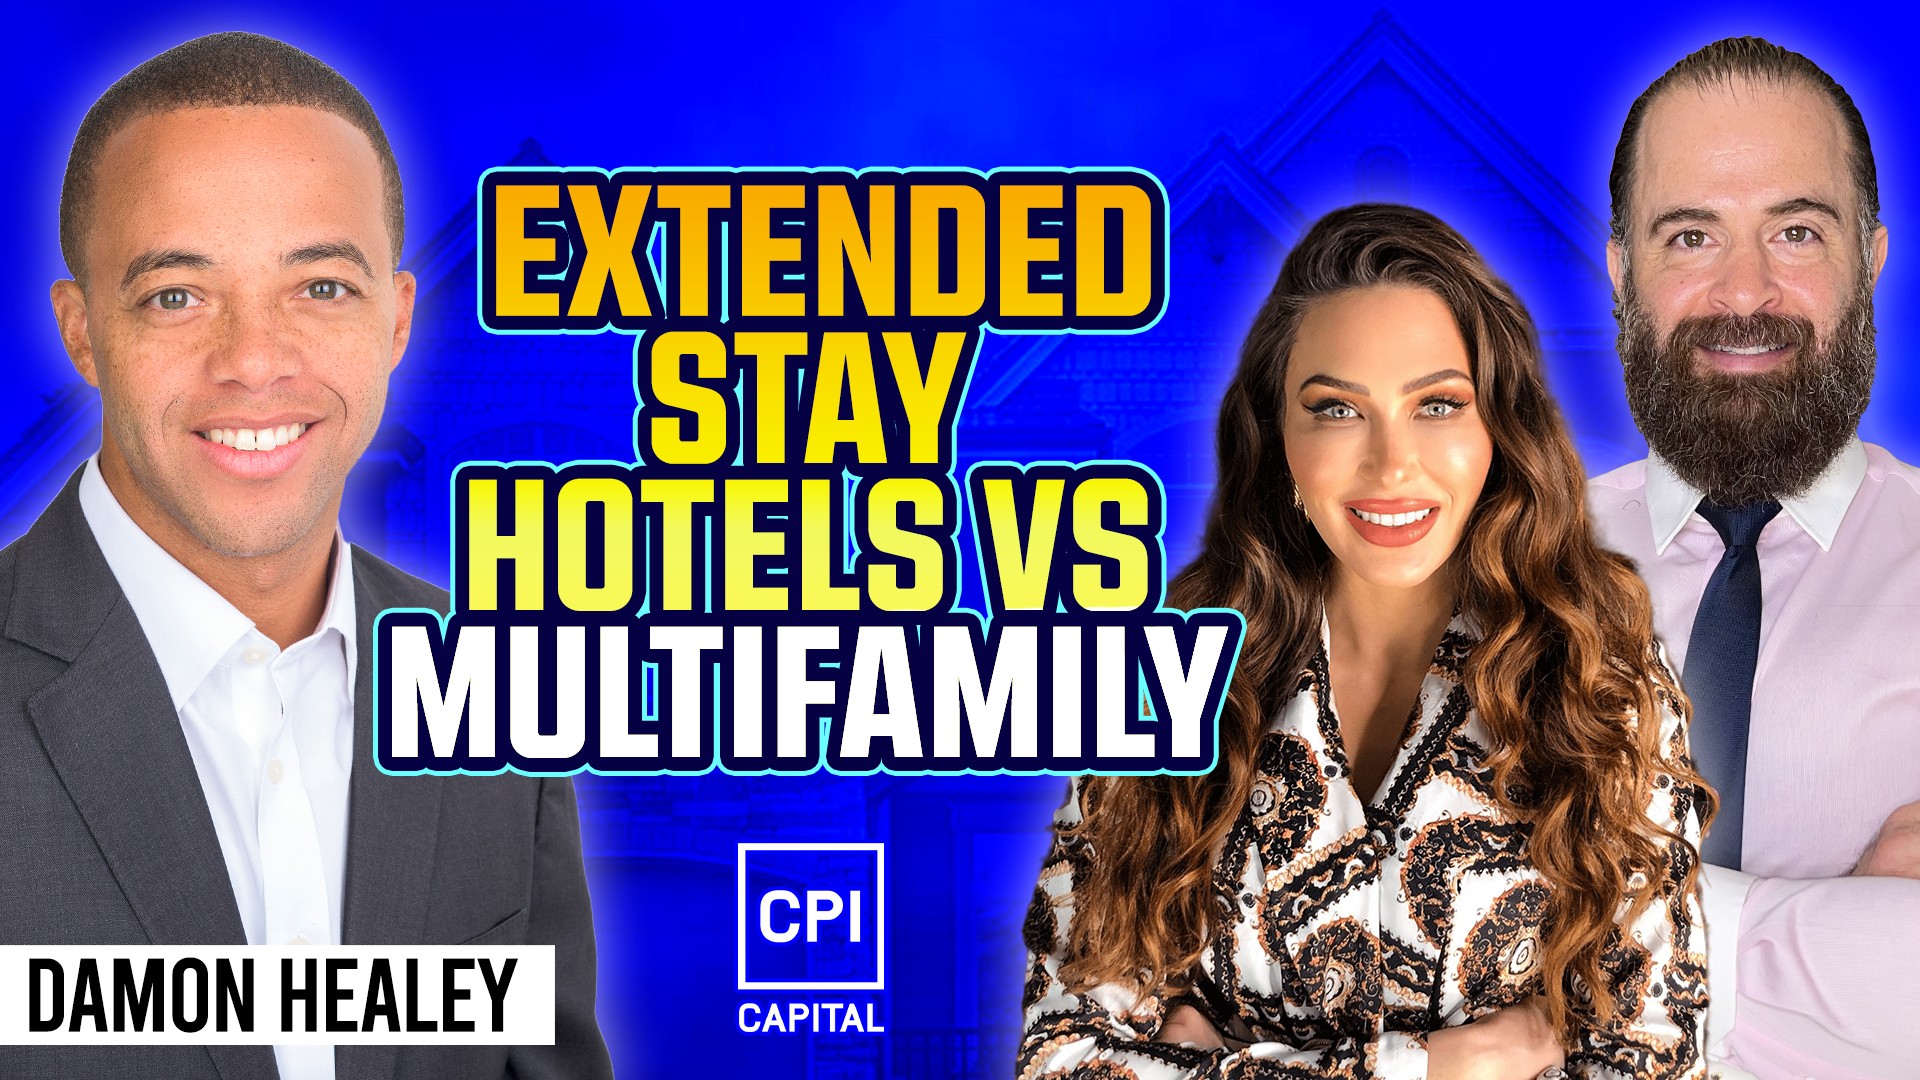 REID Damon Healey | Extended Stay Hotels